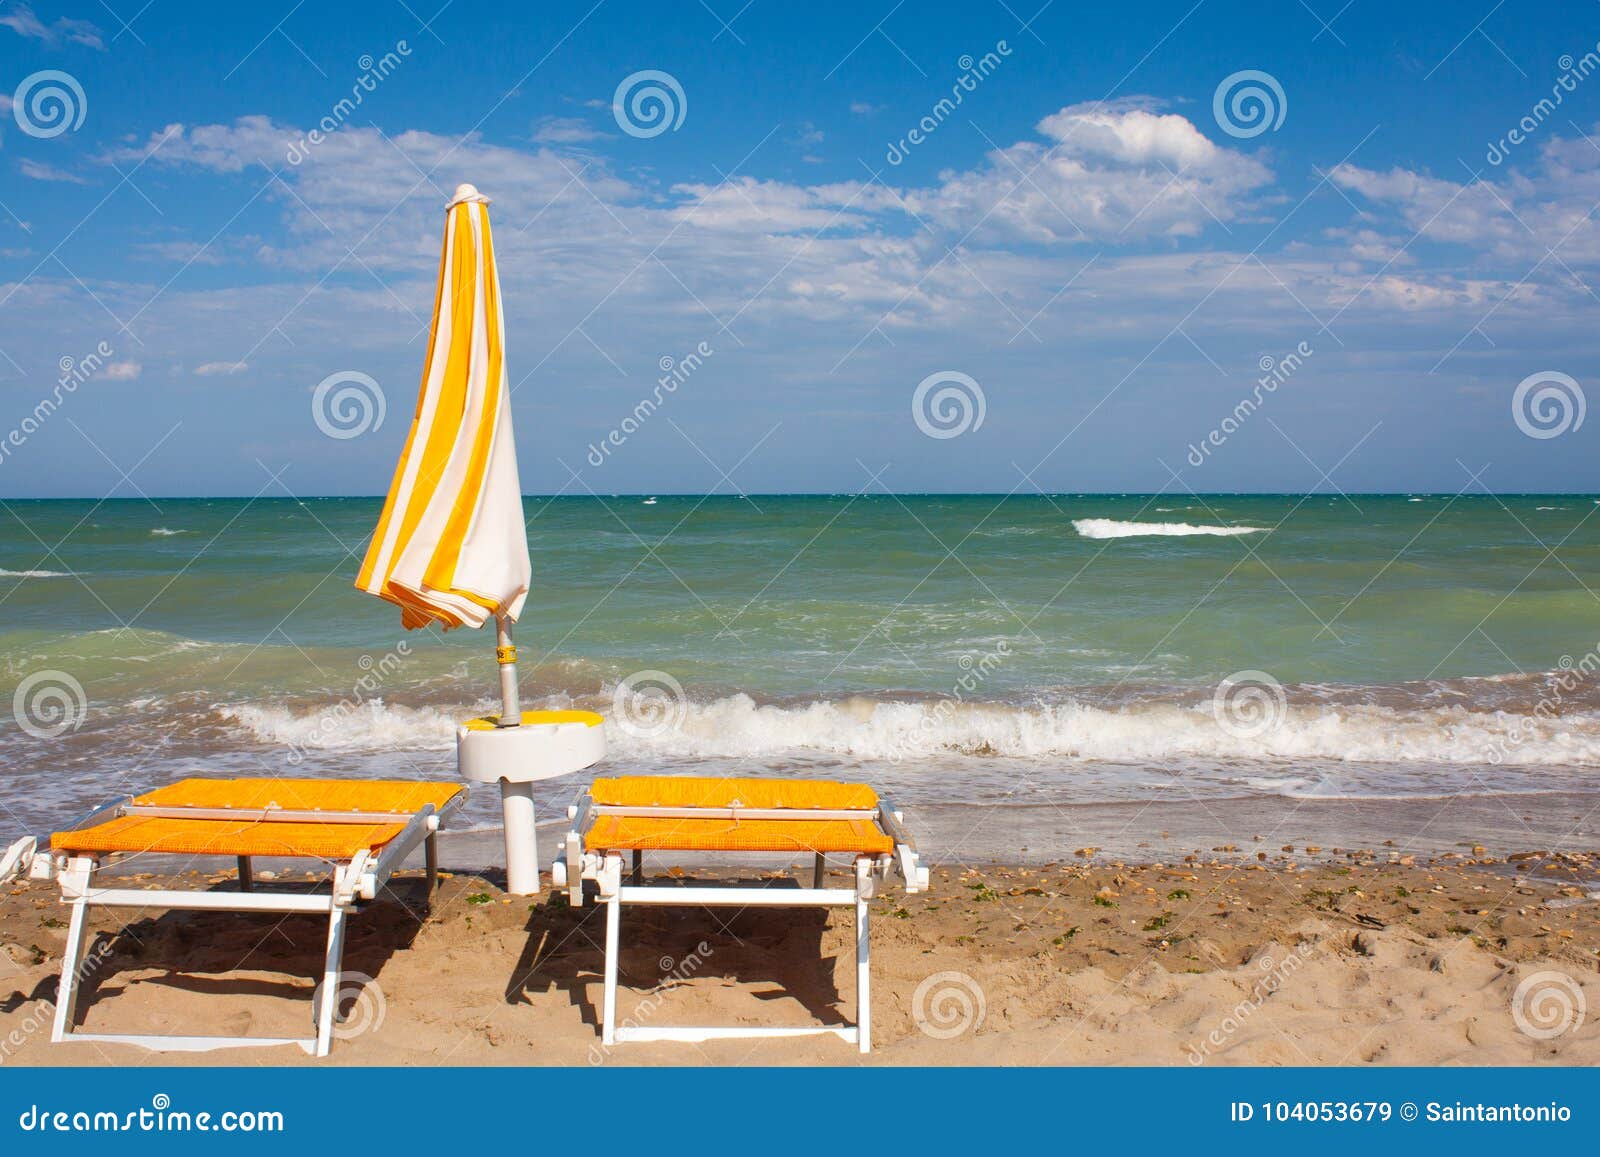 Adriatic Sea Coast View. Seashore of Italy, Summer Umbrellas on Sandy ...